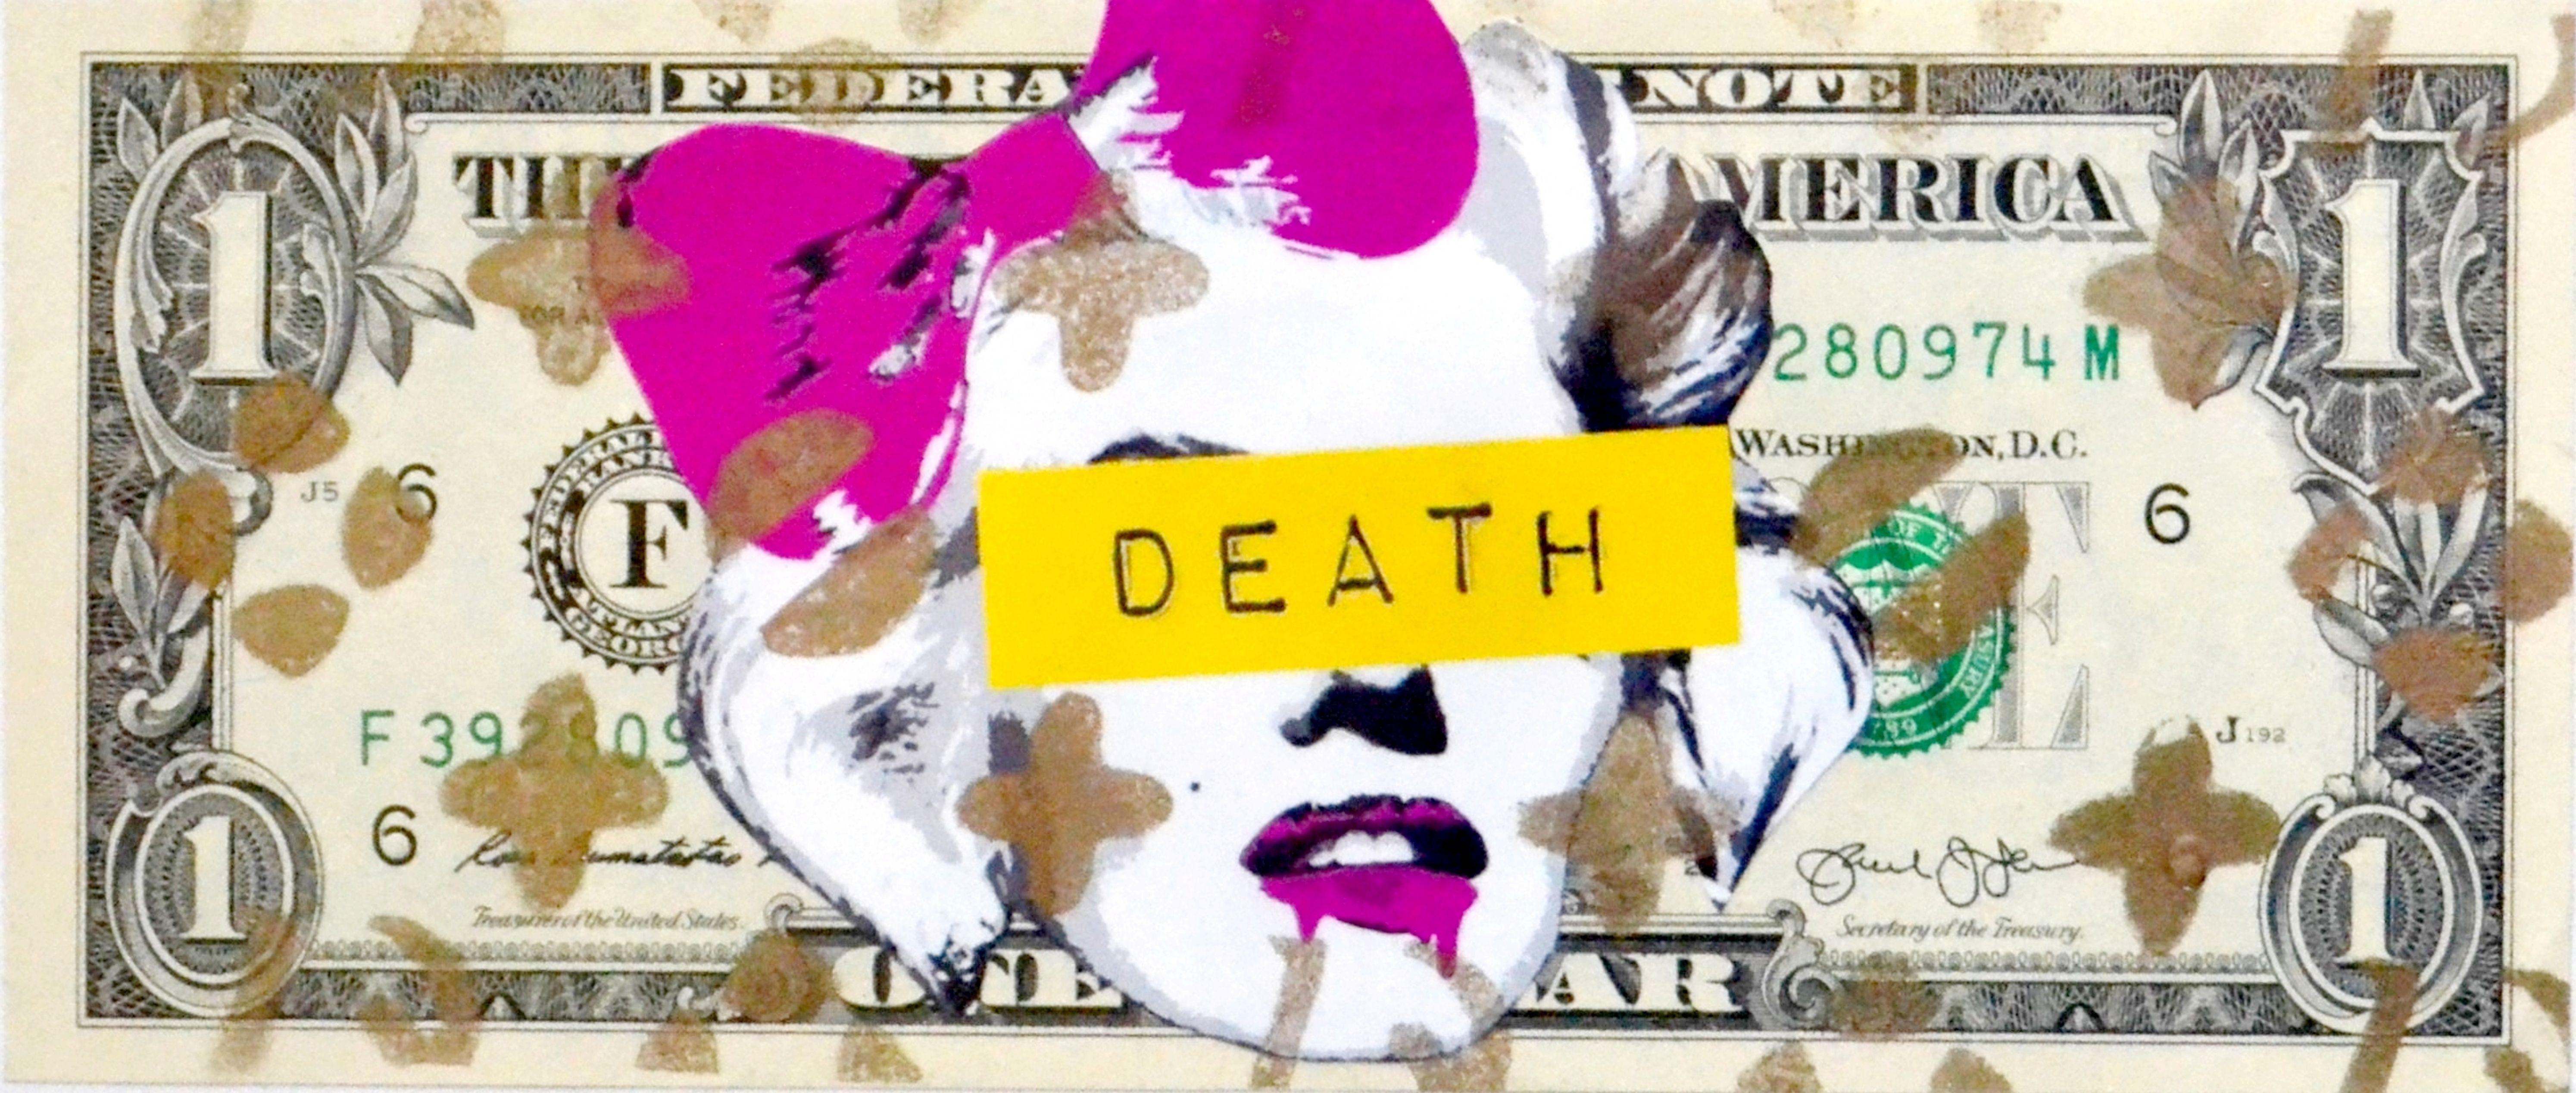 Drip Melt Logo - Marilyn Death Drip Melt (1 $ Bank note) by Death NYC, 2013 | Print ...